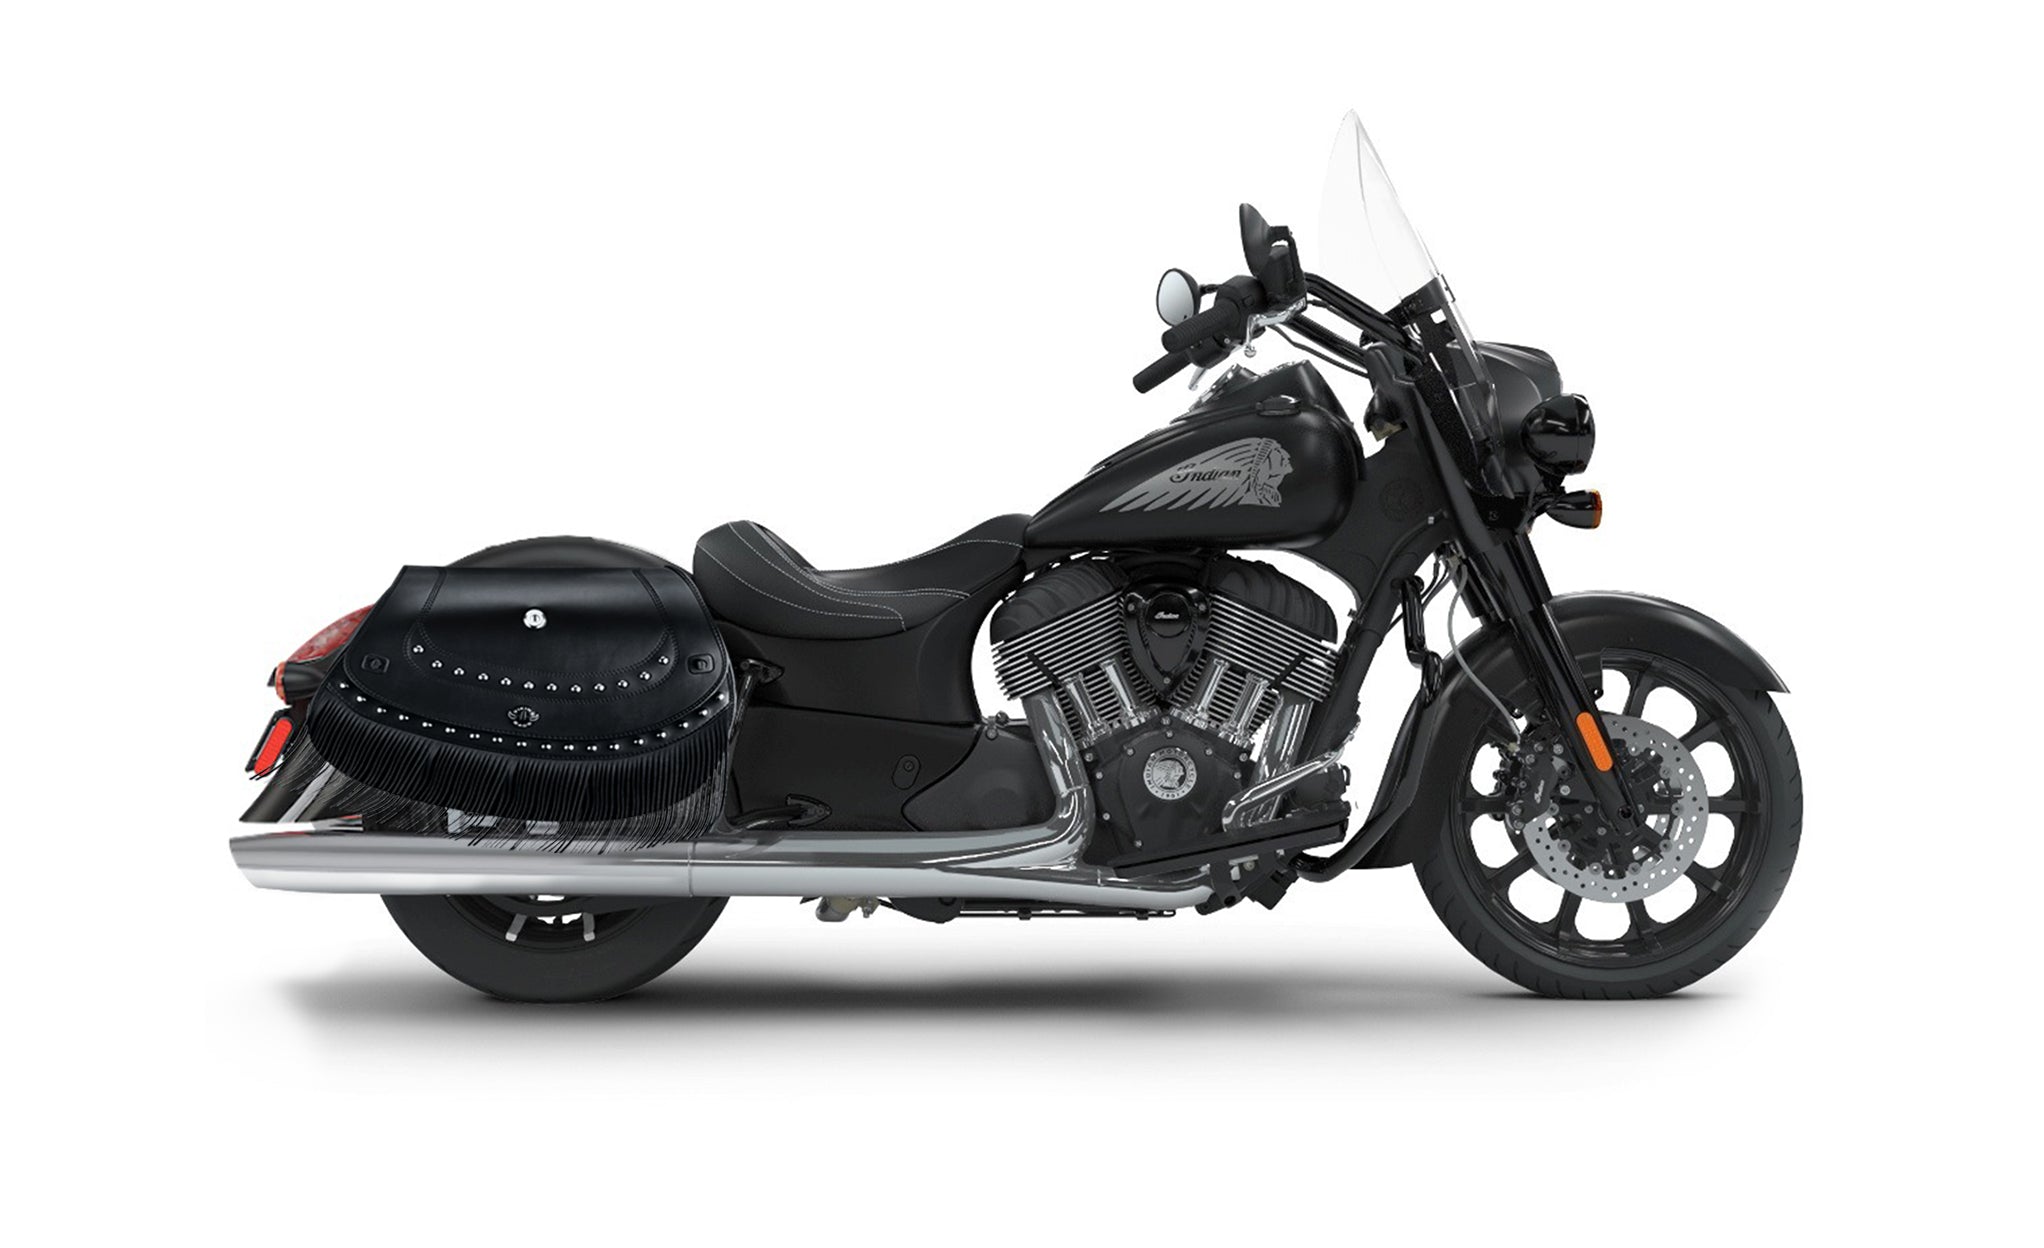 Viking Mohawk Extra Large Indian Springfield Darkhorse Specific Leather Motorcycle Saddlebags on Bike Photo @expand